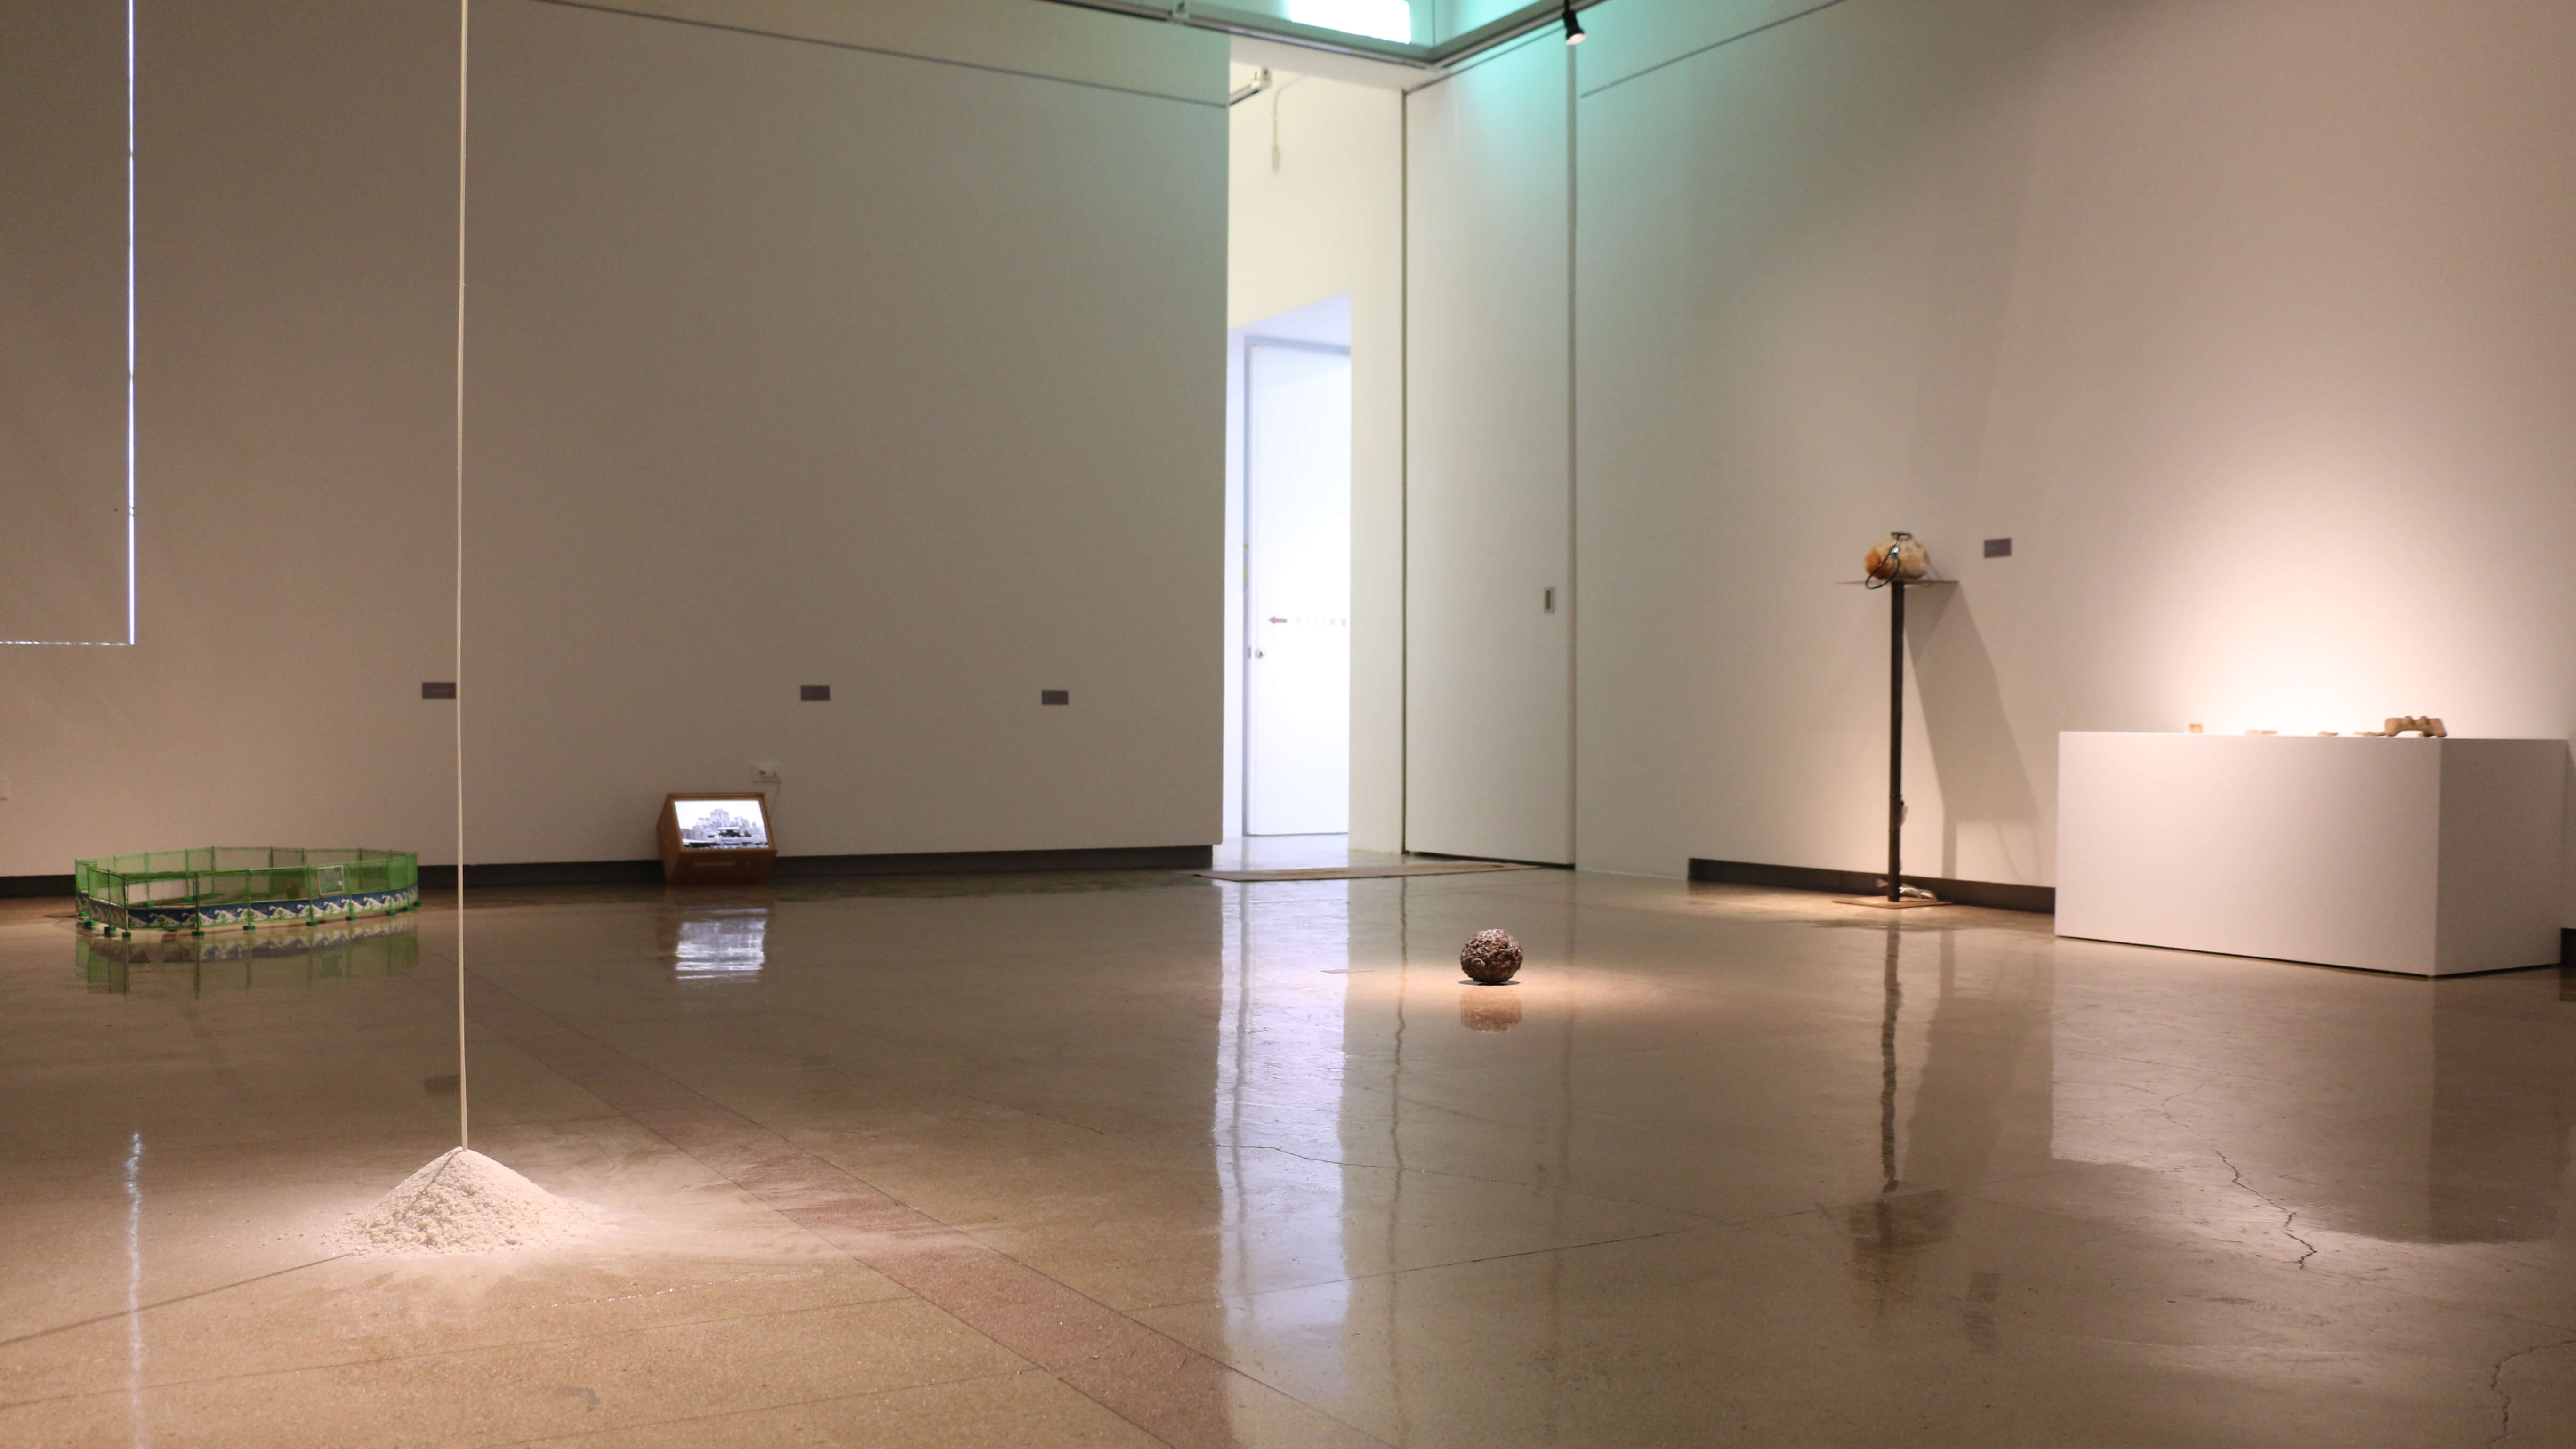 宜蘭美術館202展覽室。圖 / 國際袖珍雕塑展提供